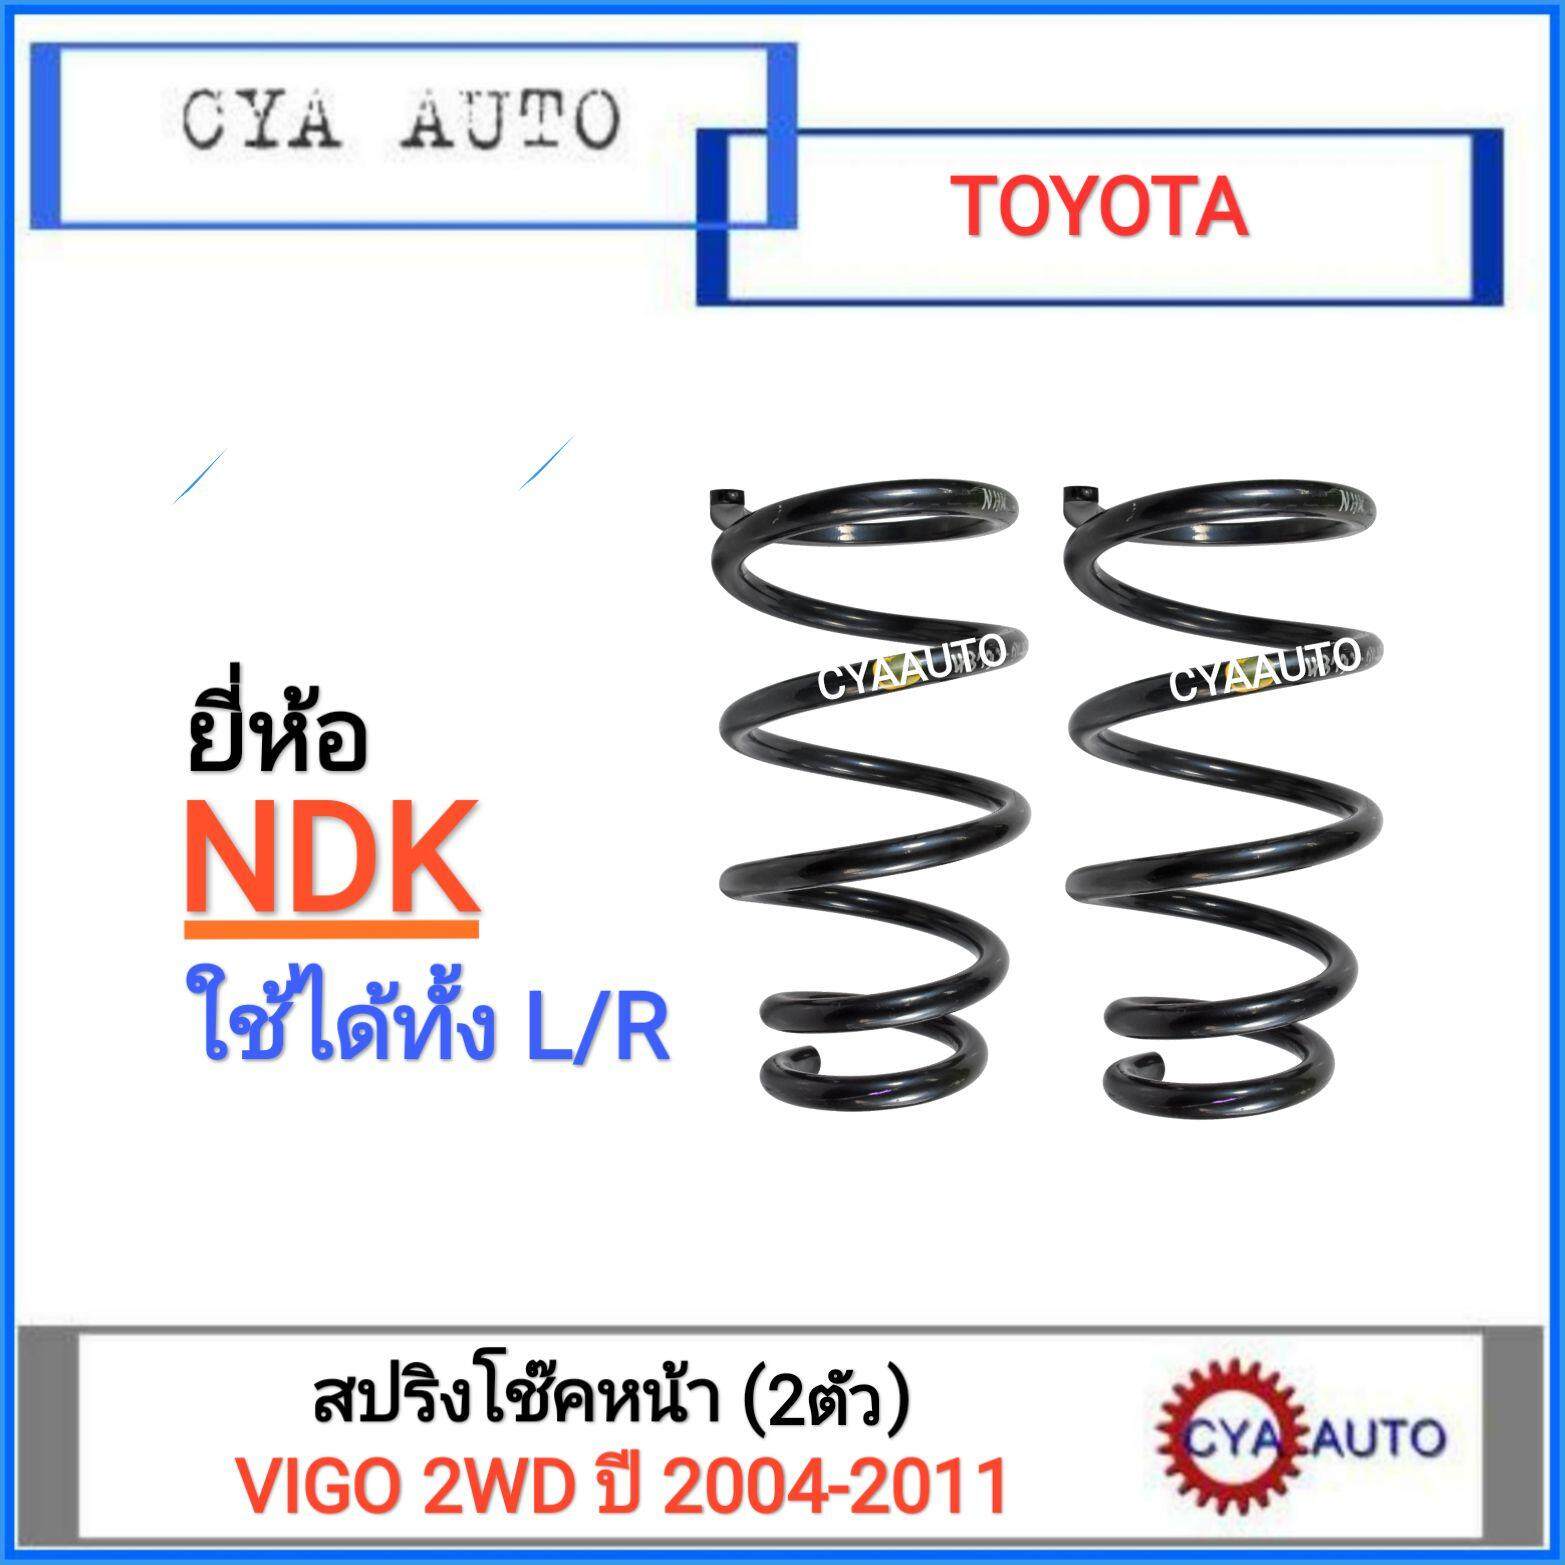 NDK (TO-S 014) สปริงโช๊ค หน้า TOYOTA VIGO 2WD ตัวเตี้ย ปี 2004-2011, REVO 2WD (2 ตัว)